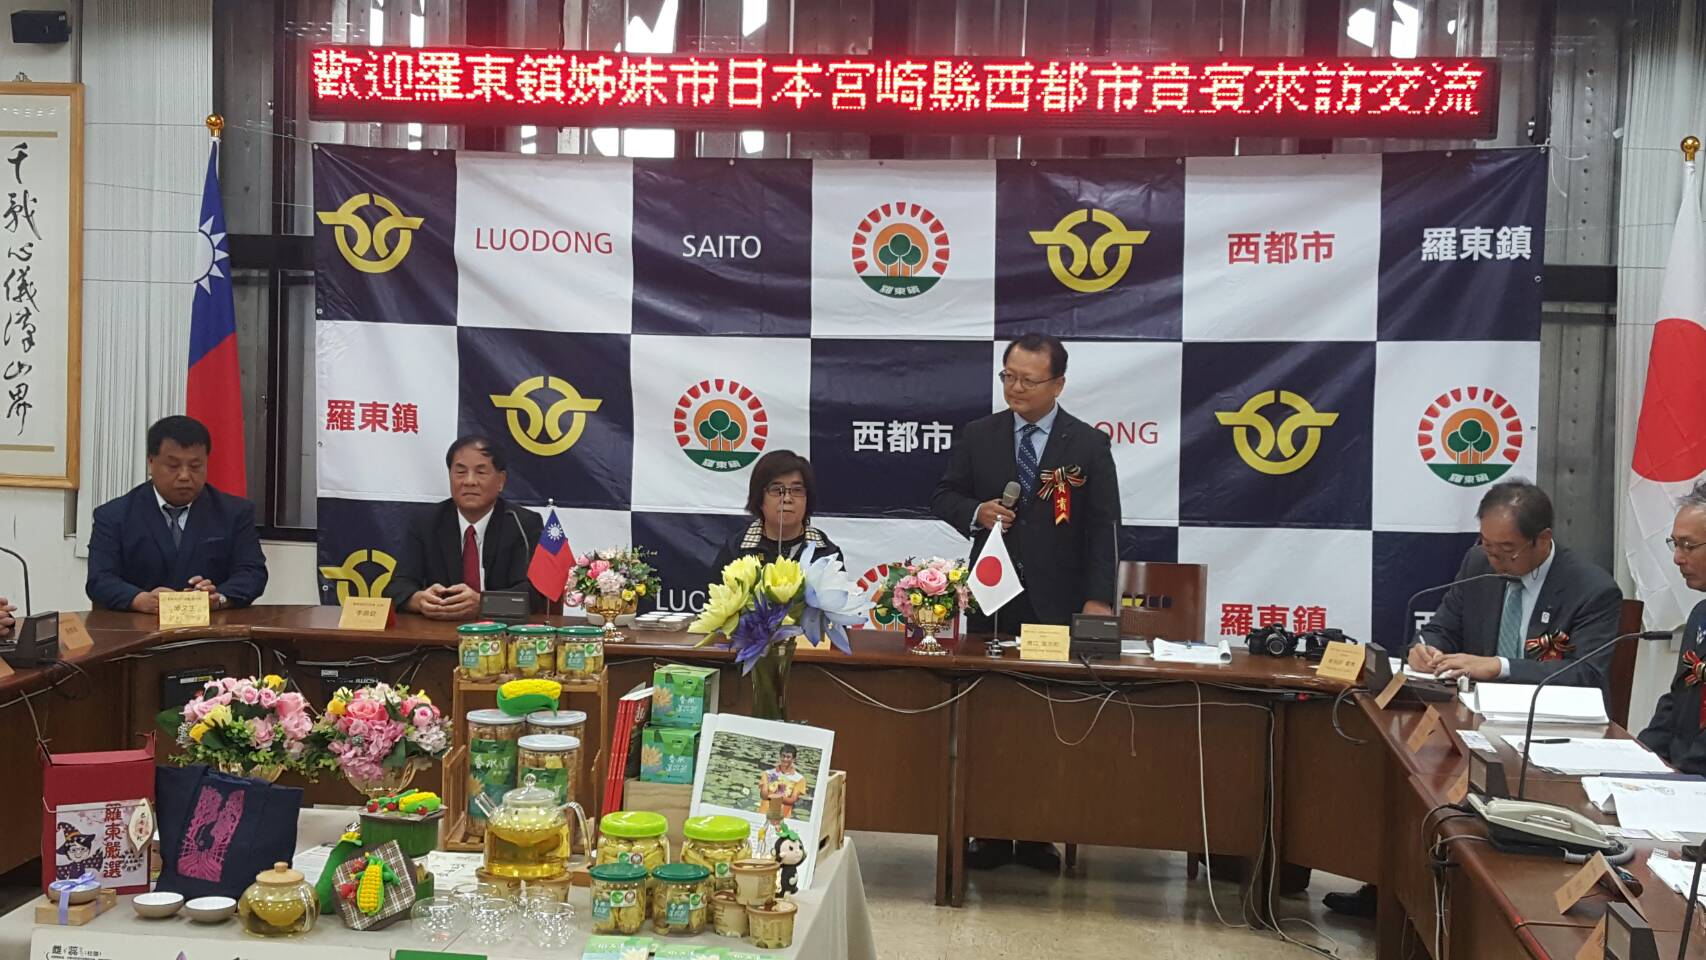 日本宮崎縣西都市議會來訪 羅東鎮長吳秋齡推廣在地農產品